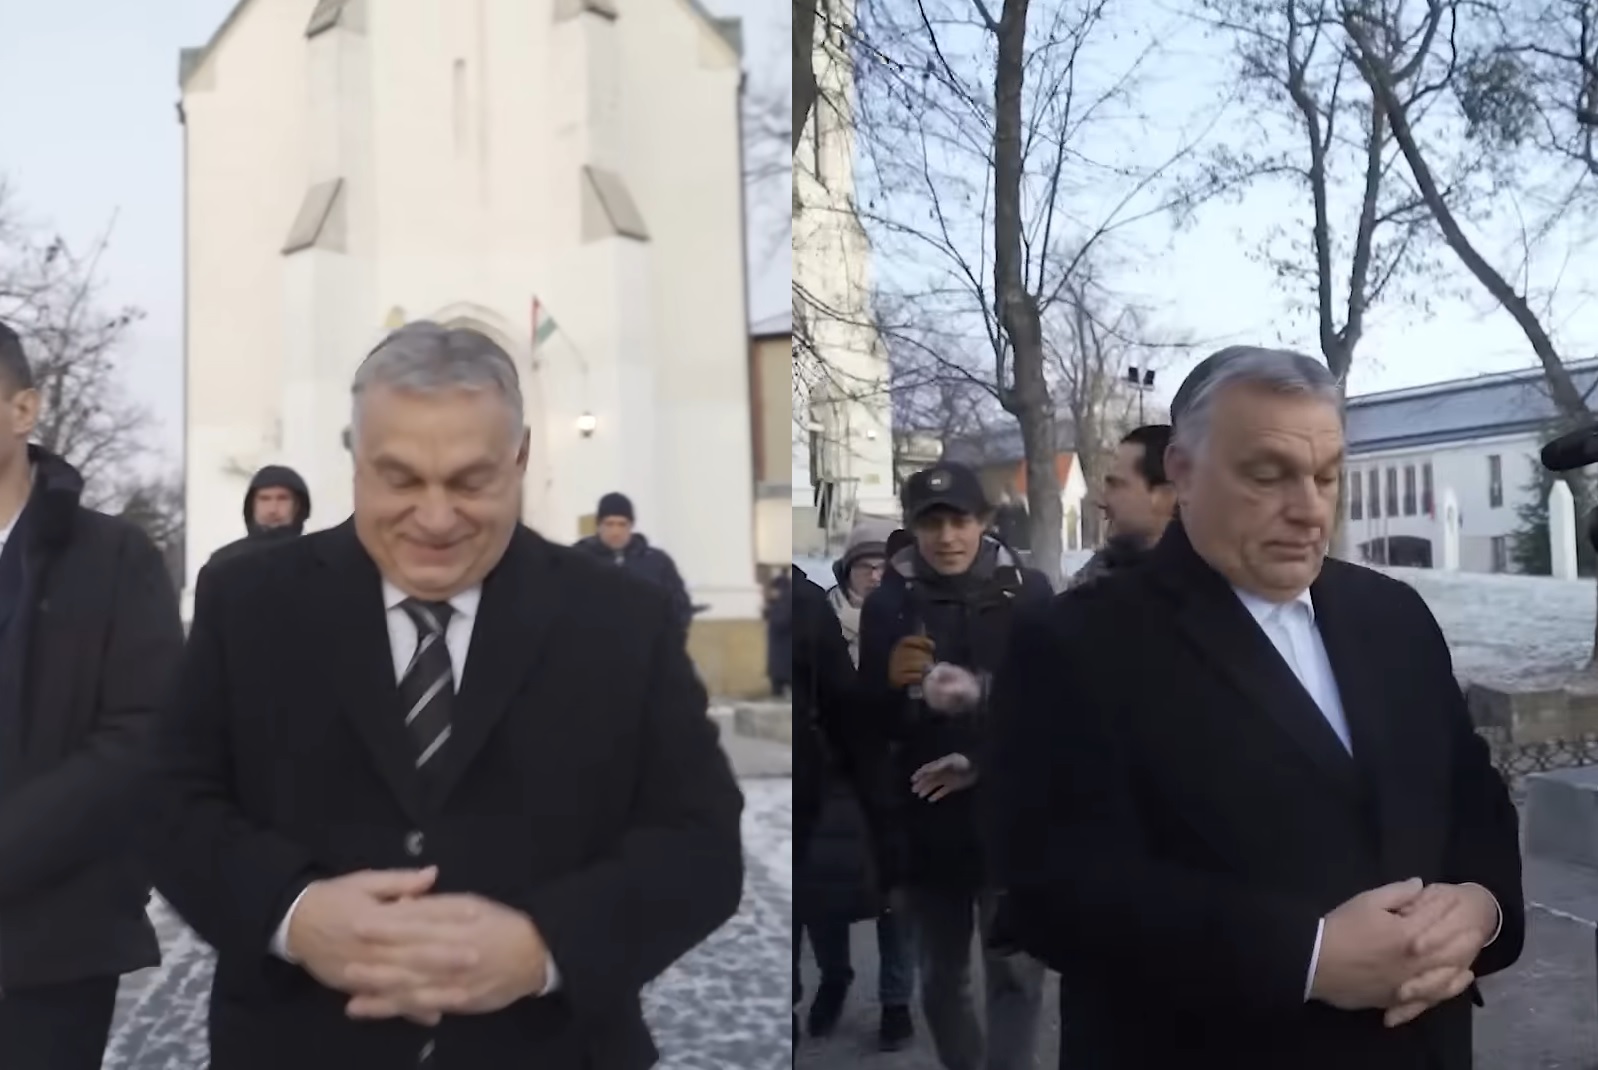 Két egymás utáni reggel is elkapták Orbánt egy templomból kijövet, de a miniszterelnök nem reagált semmire